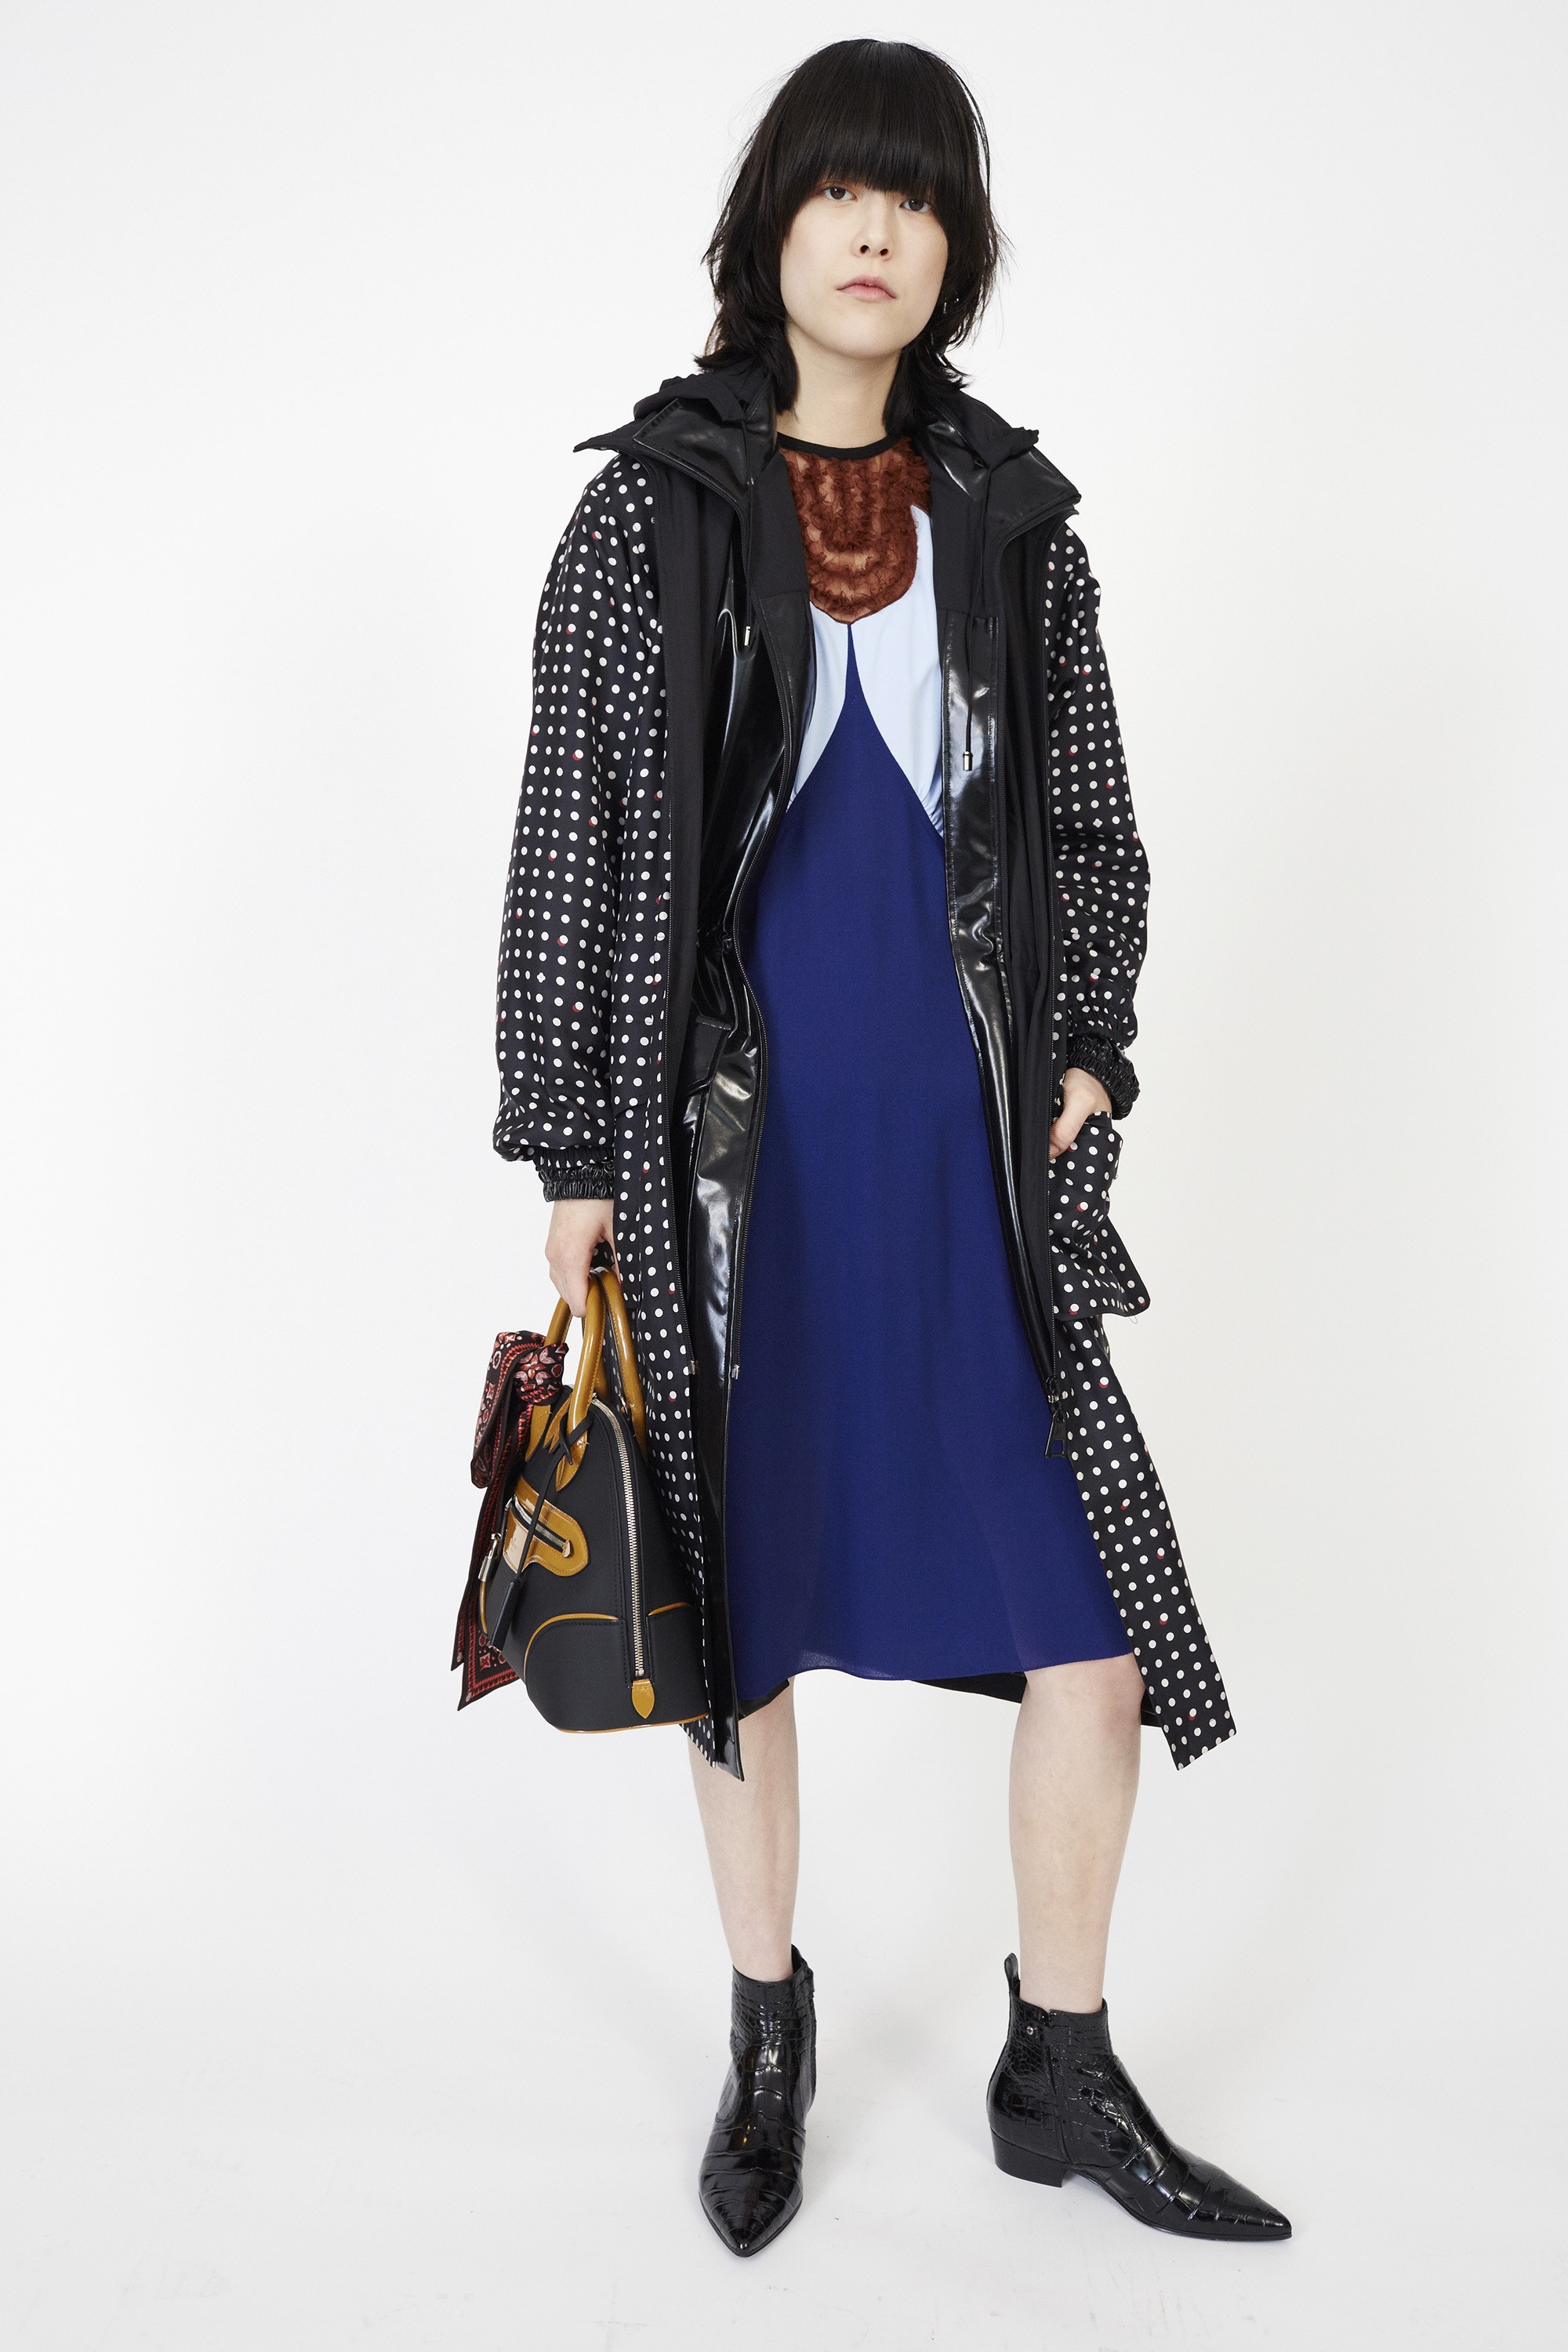 O casaco do look de pre-fall estará à venda no trunk show da Louis Vuitton na Dona Santa (Foto: Divulgação)